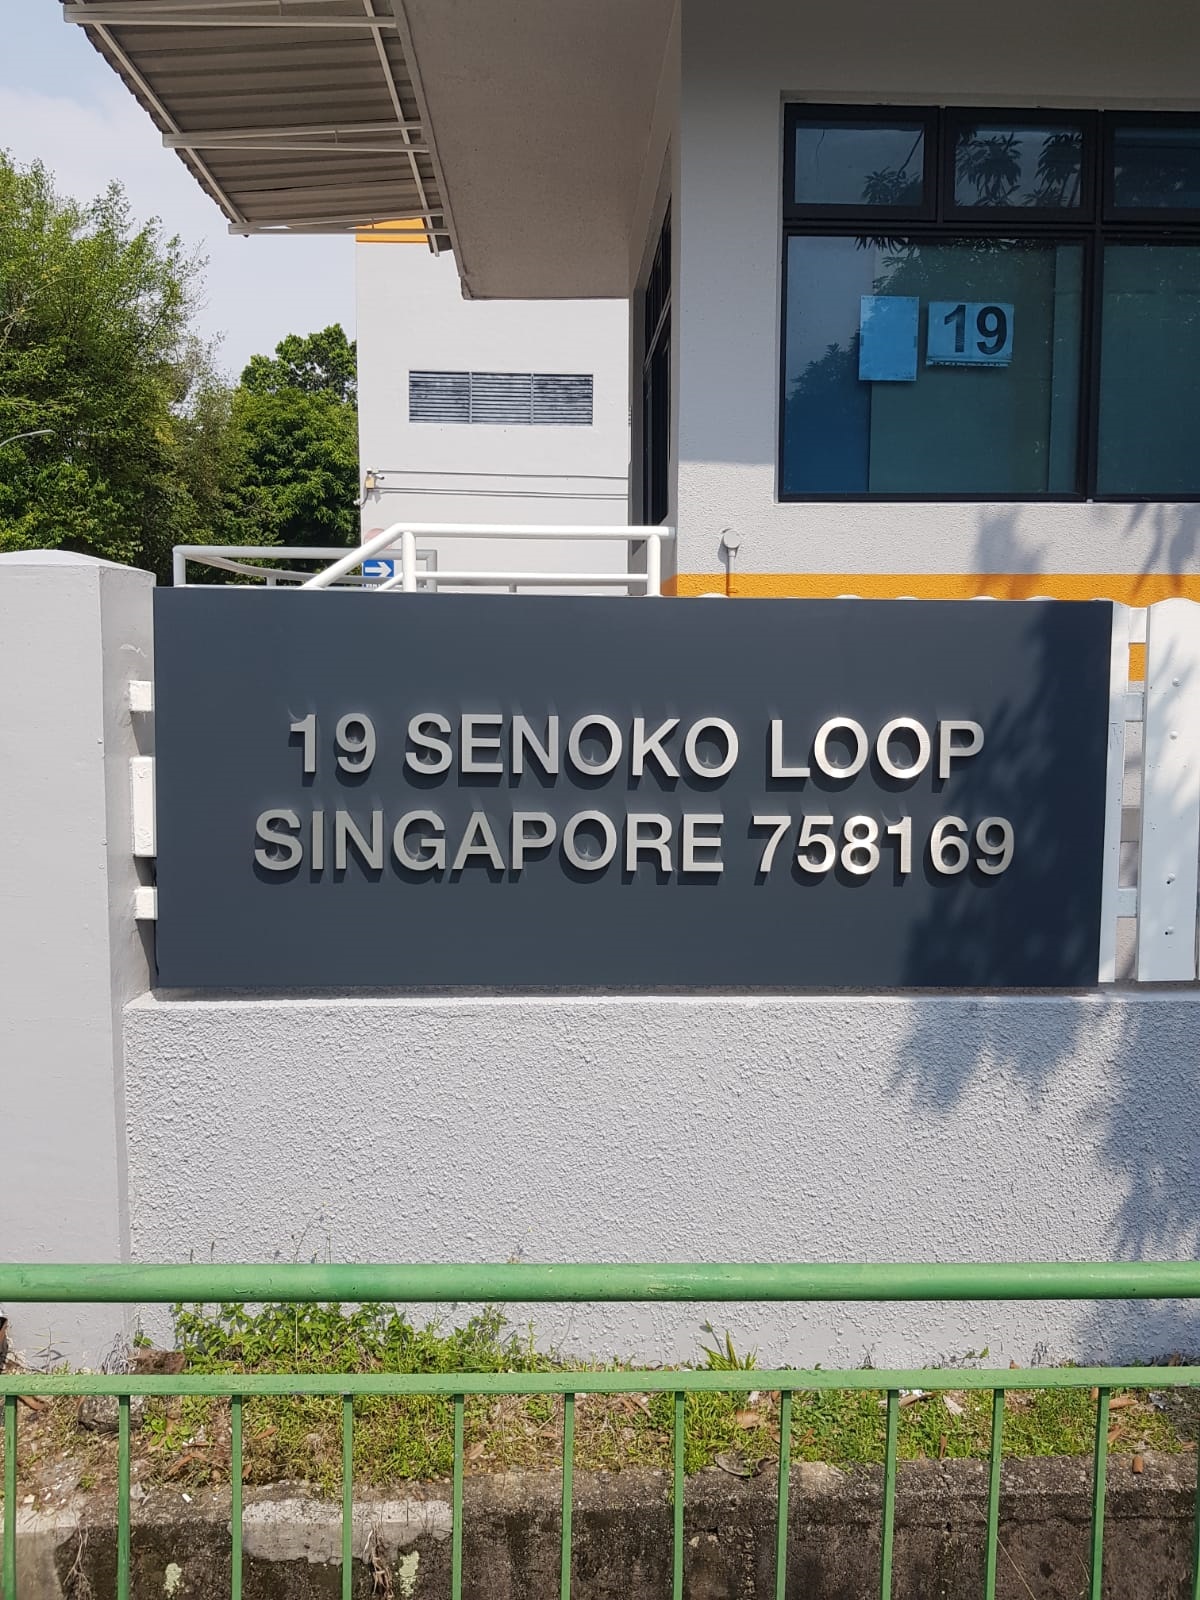 19 SENOKO LOOP SINGAPORE